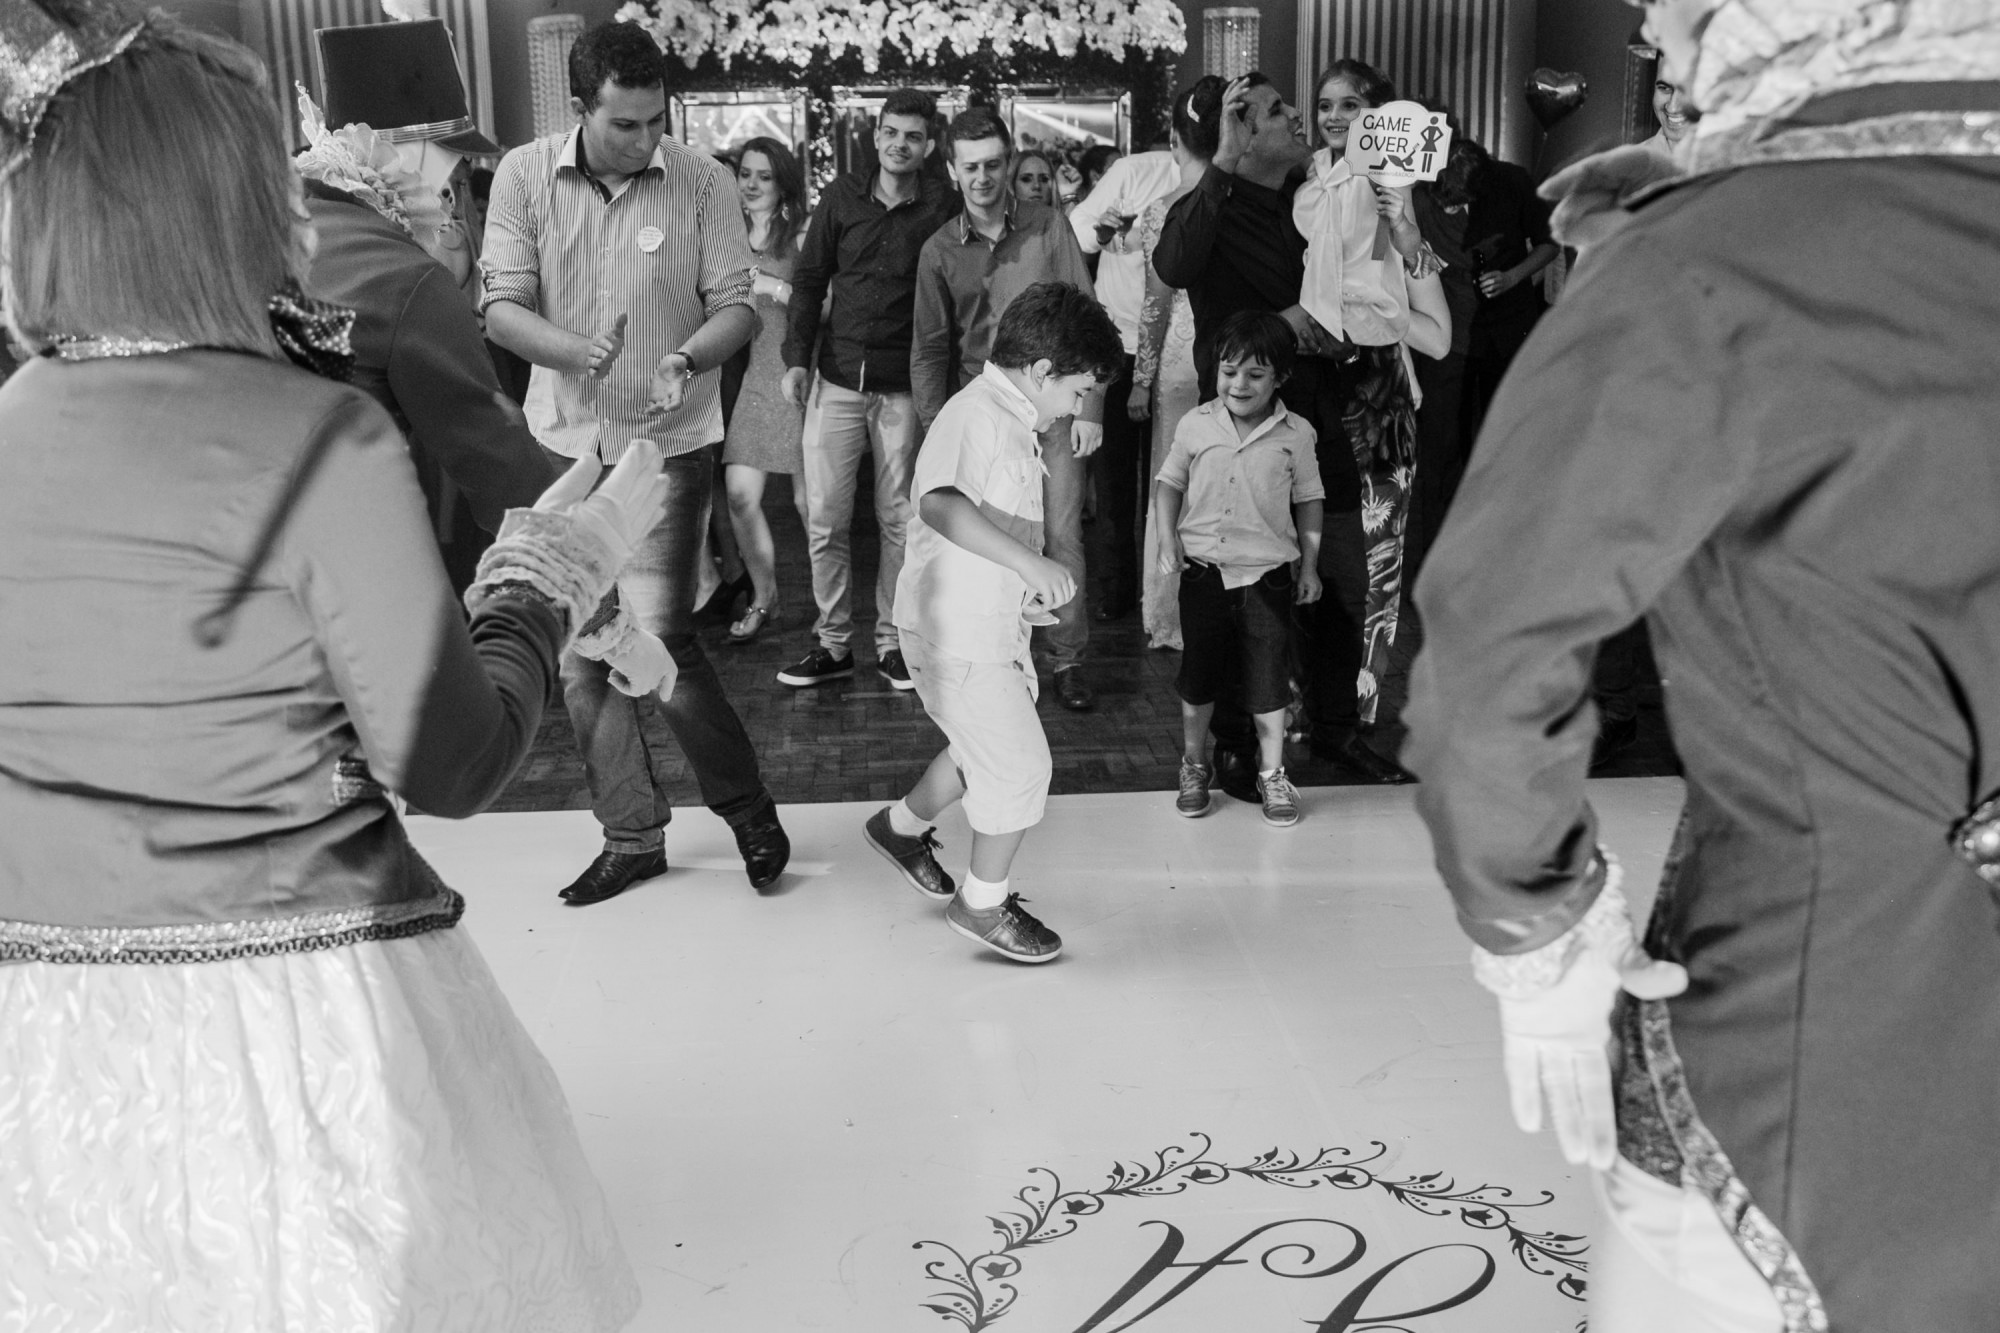 Casamento Anderson e Juliana Fioreli em Iporã Paraná - por Lorran Souza e Léia Sotile - Fotografos de casamentos - JA-3595